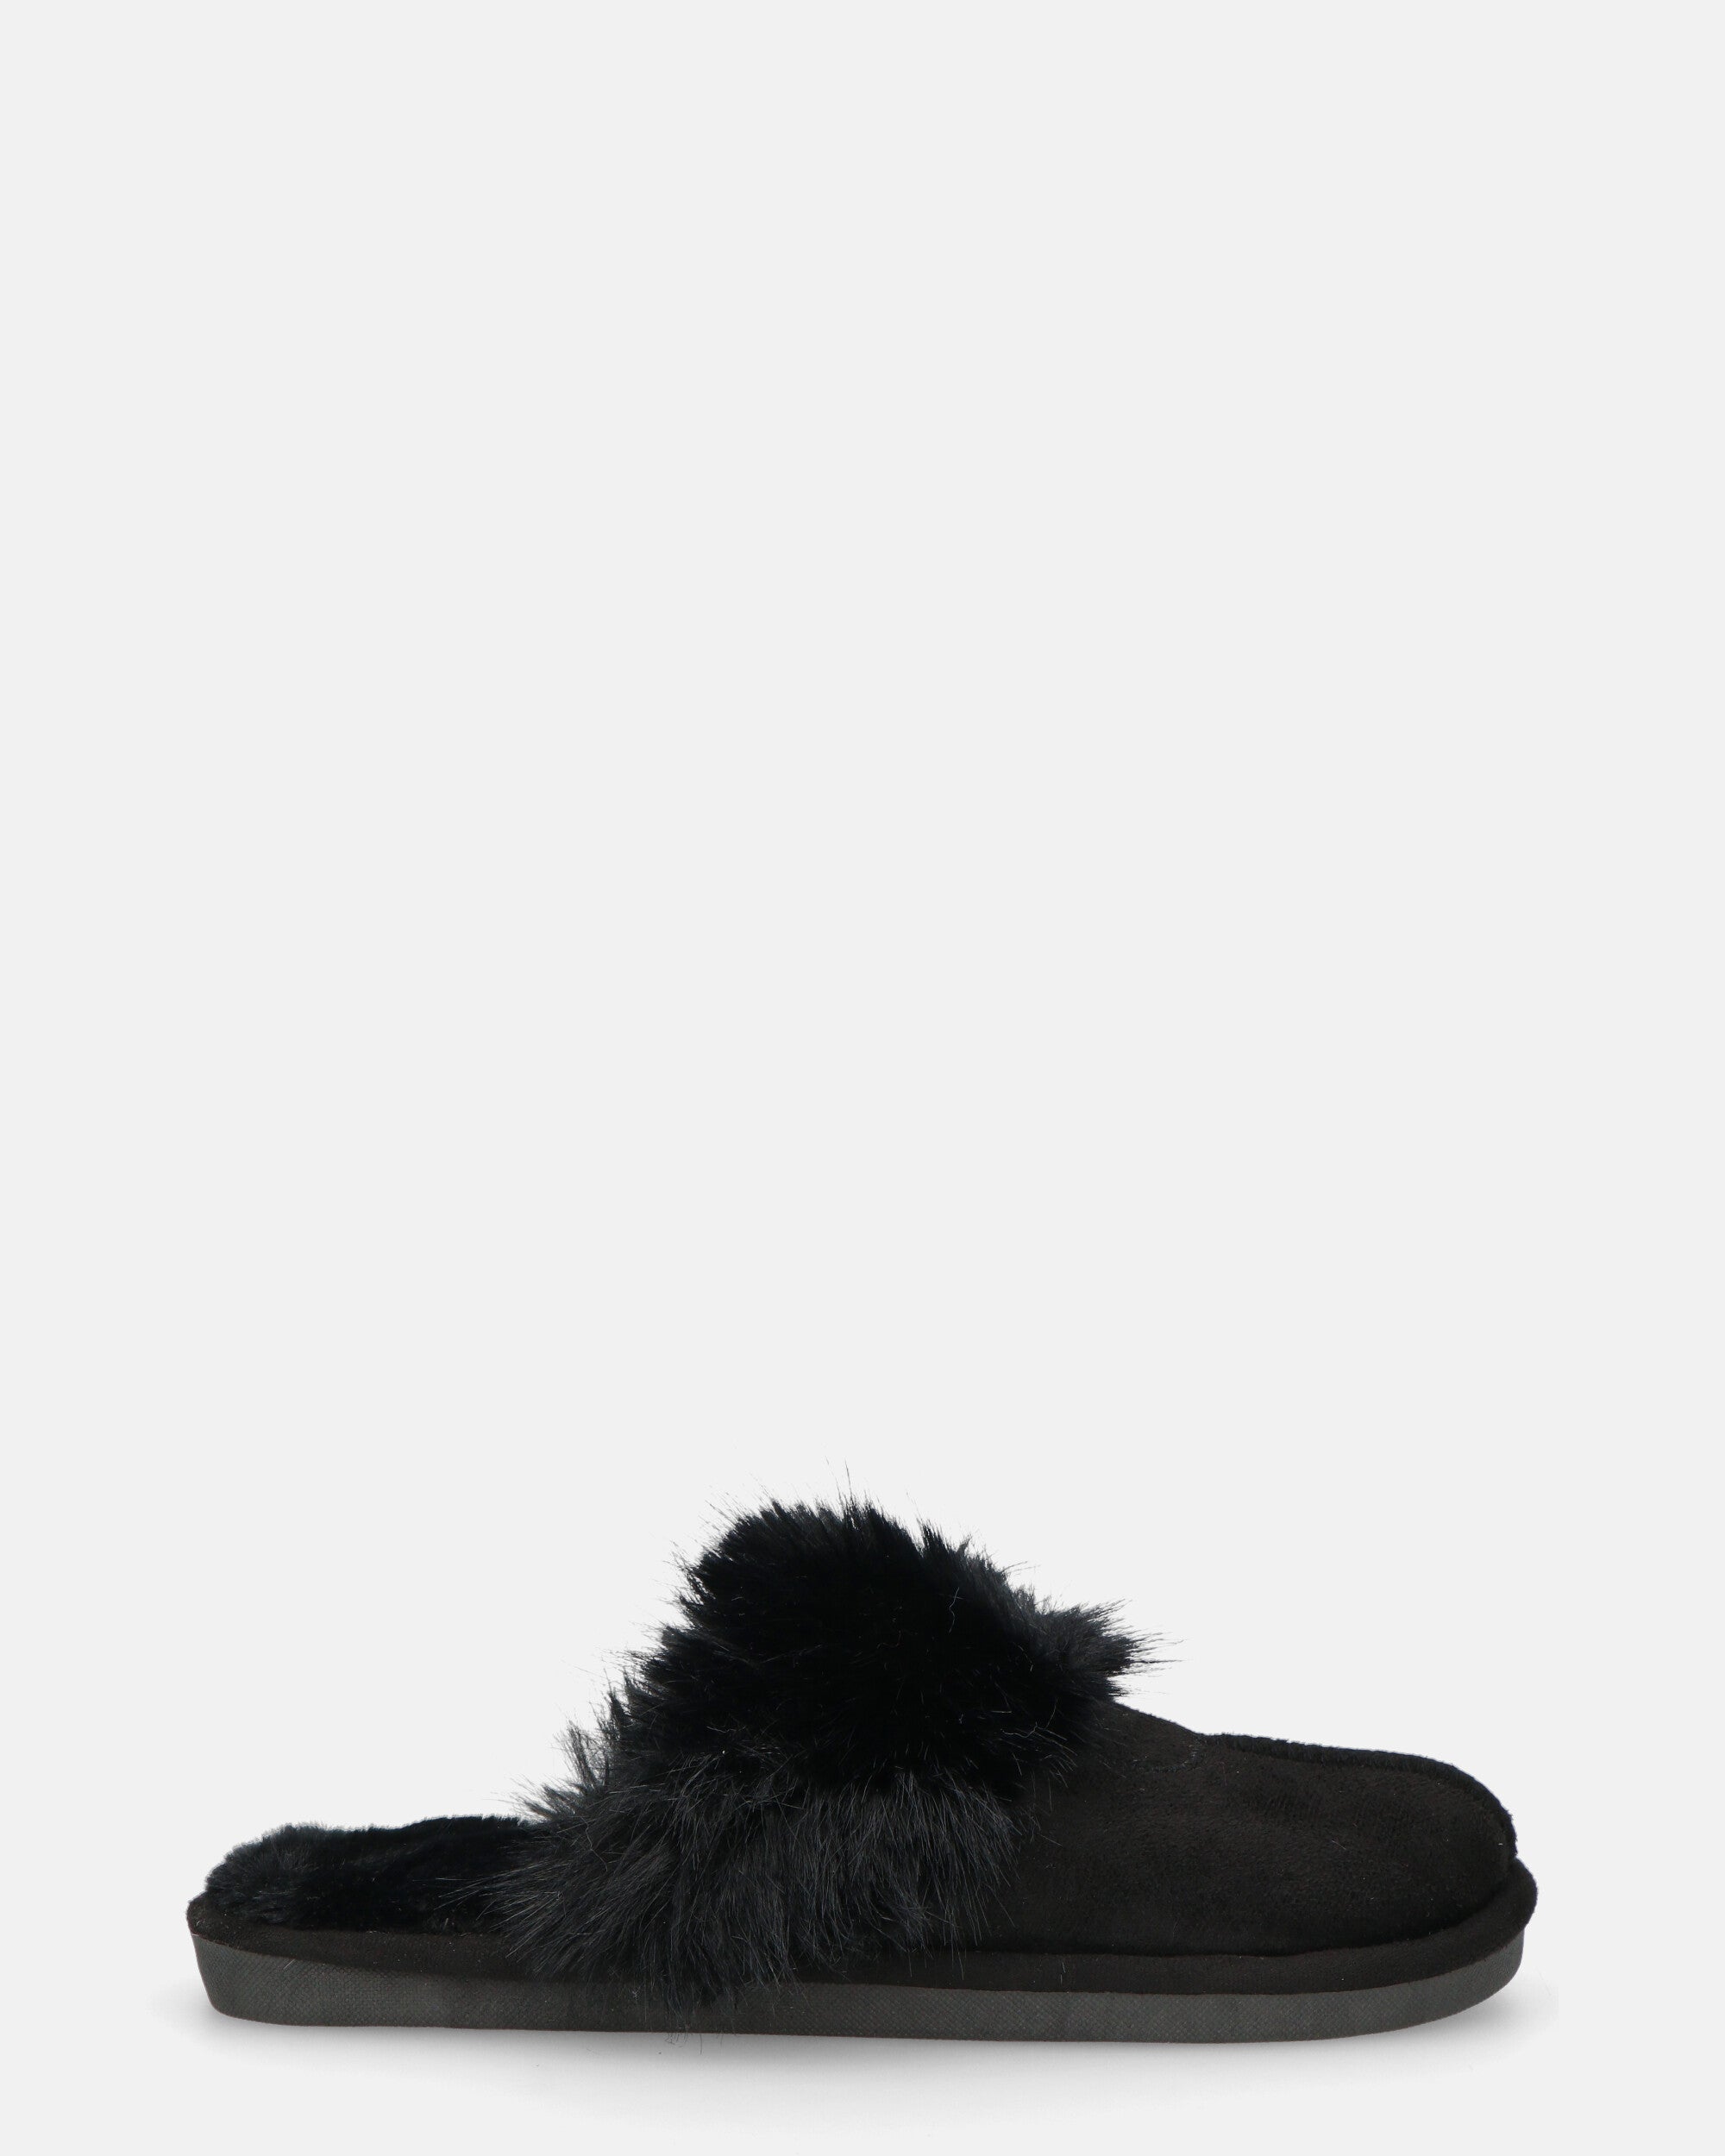 MIDORI - chaussons noirs avec fourrure et daim